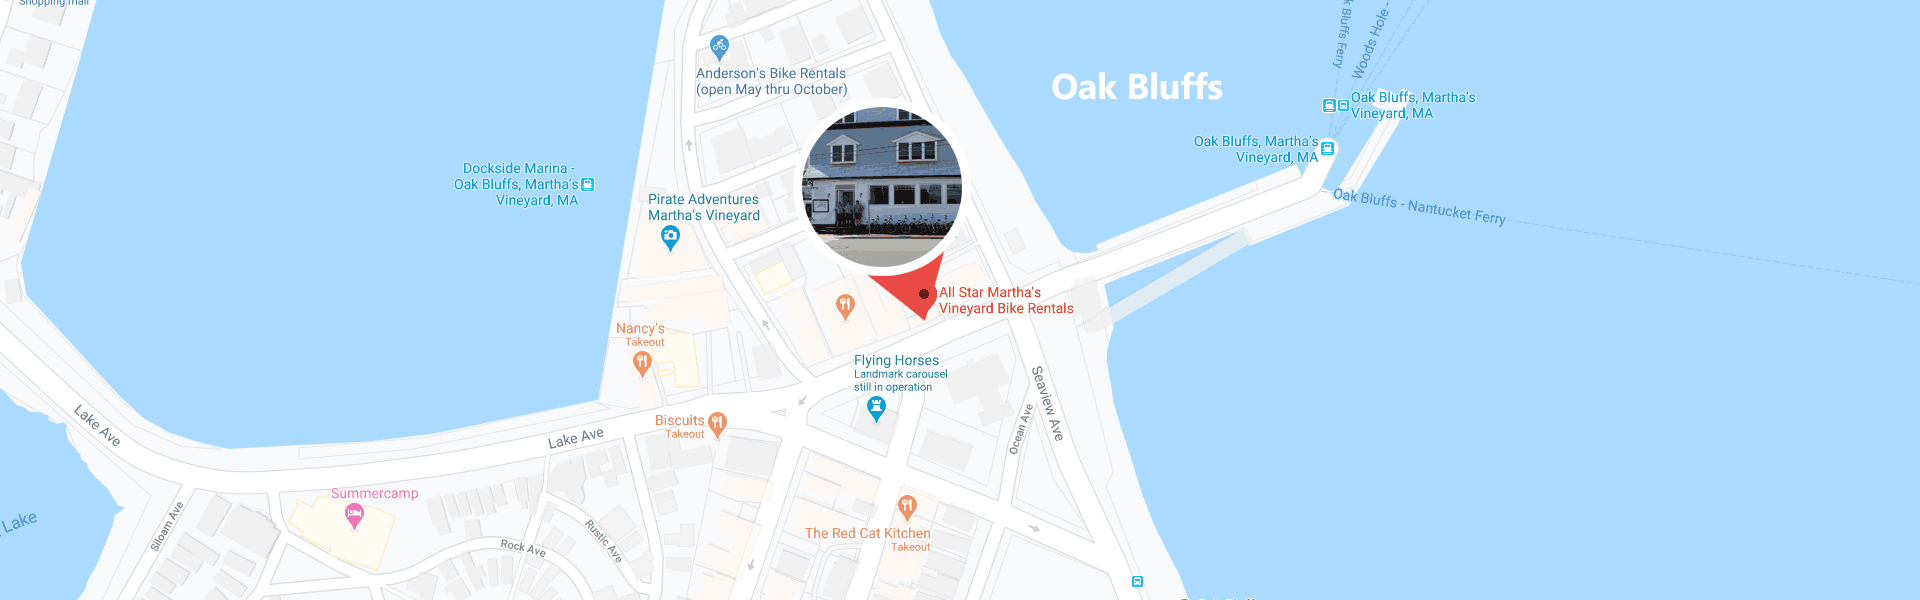 bike shop oak bluffs location